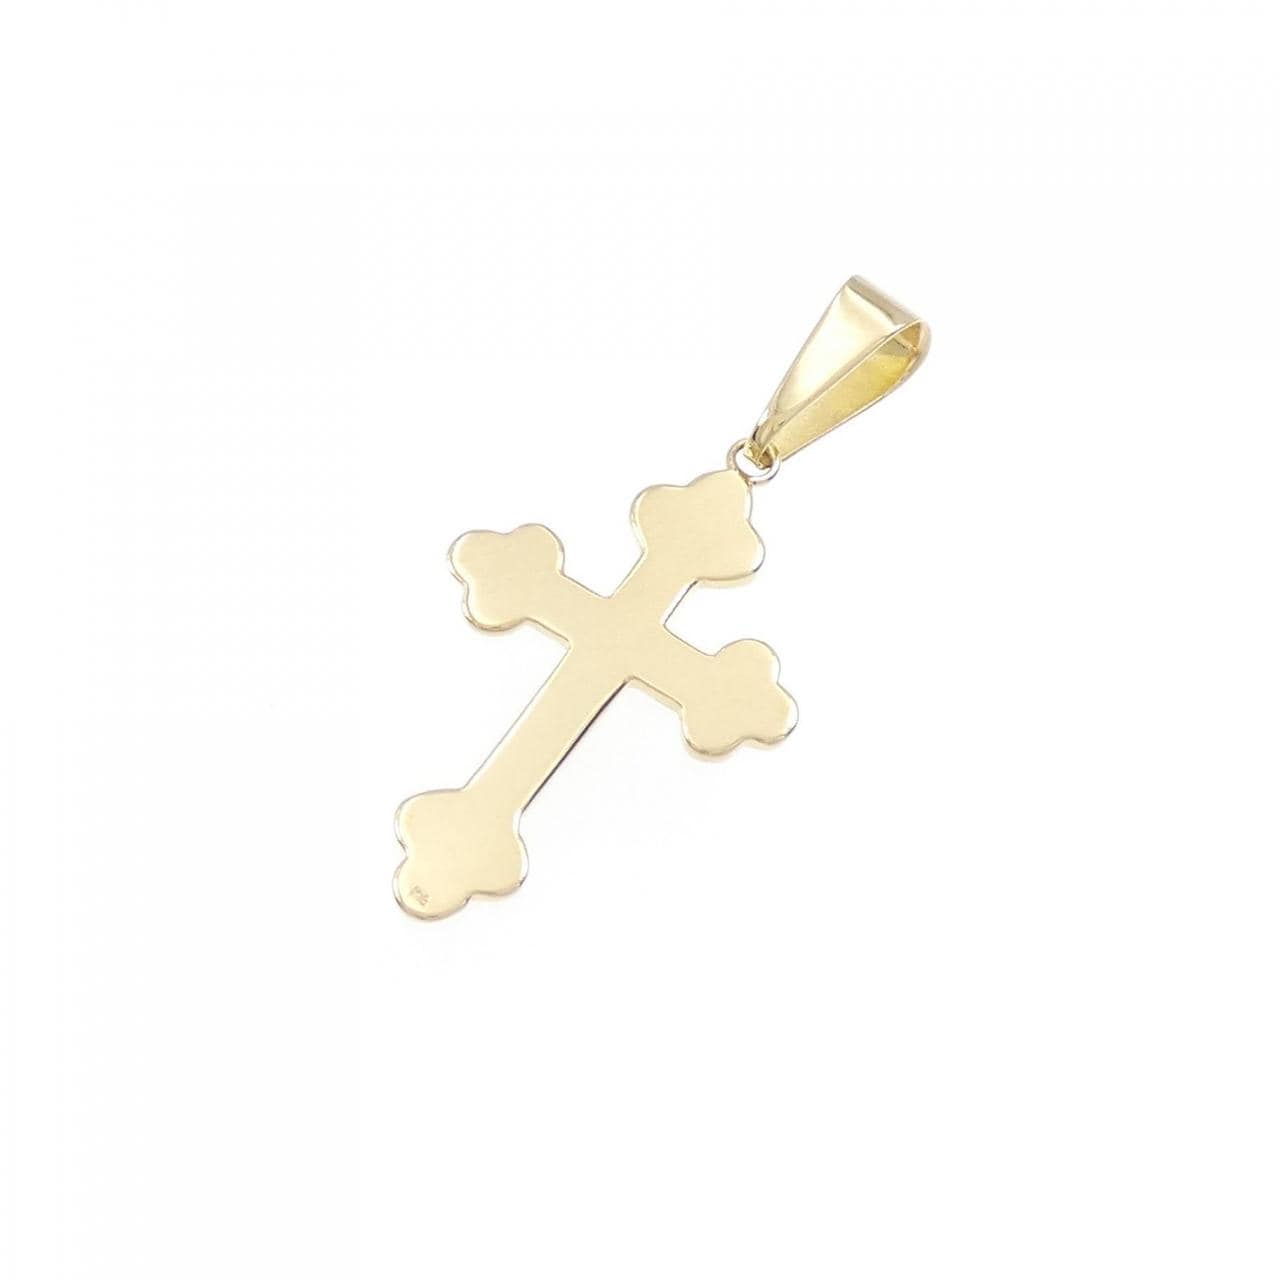 [BRAND NEW] K18YG cross pendant